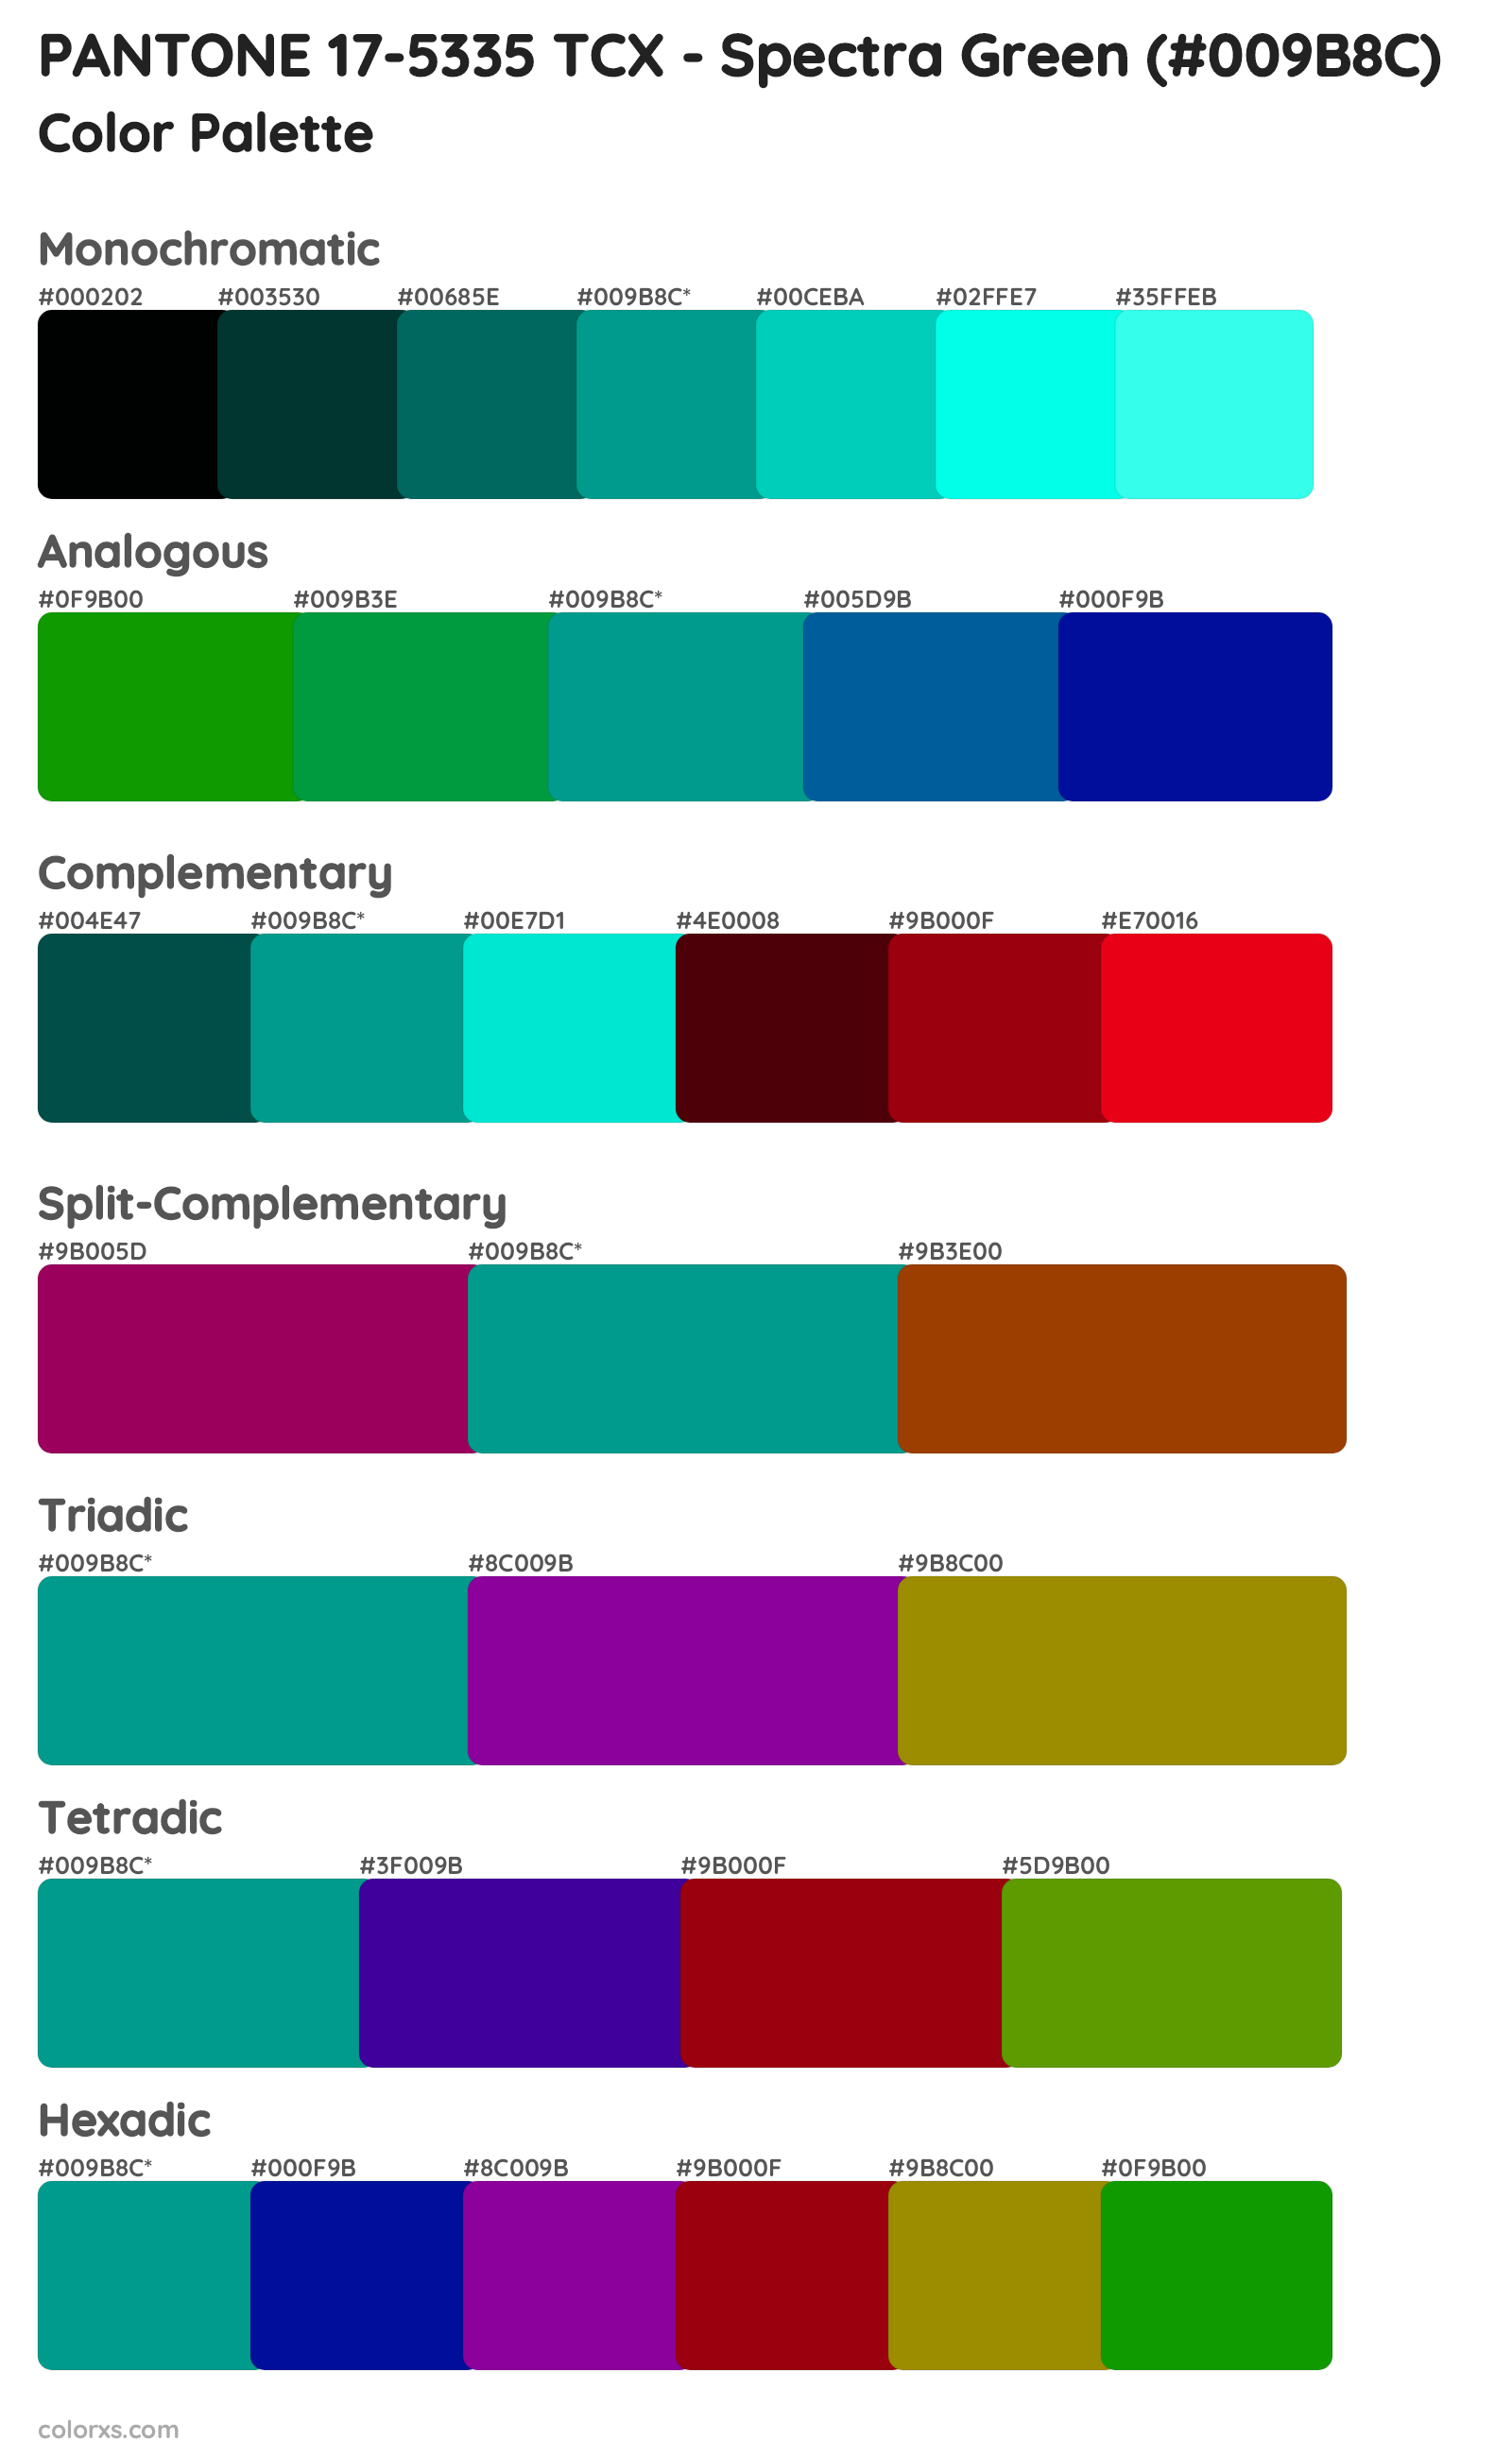 PANTONE 17-5335 TCX - Spectra Green Color Scheme Palettes